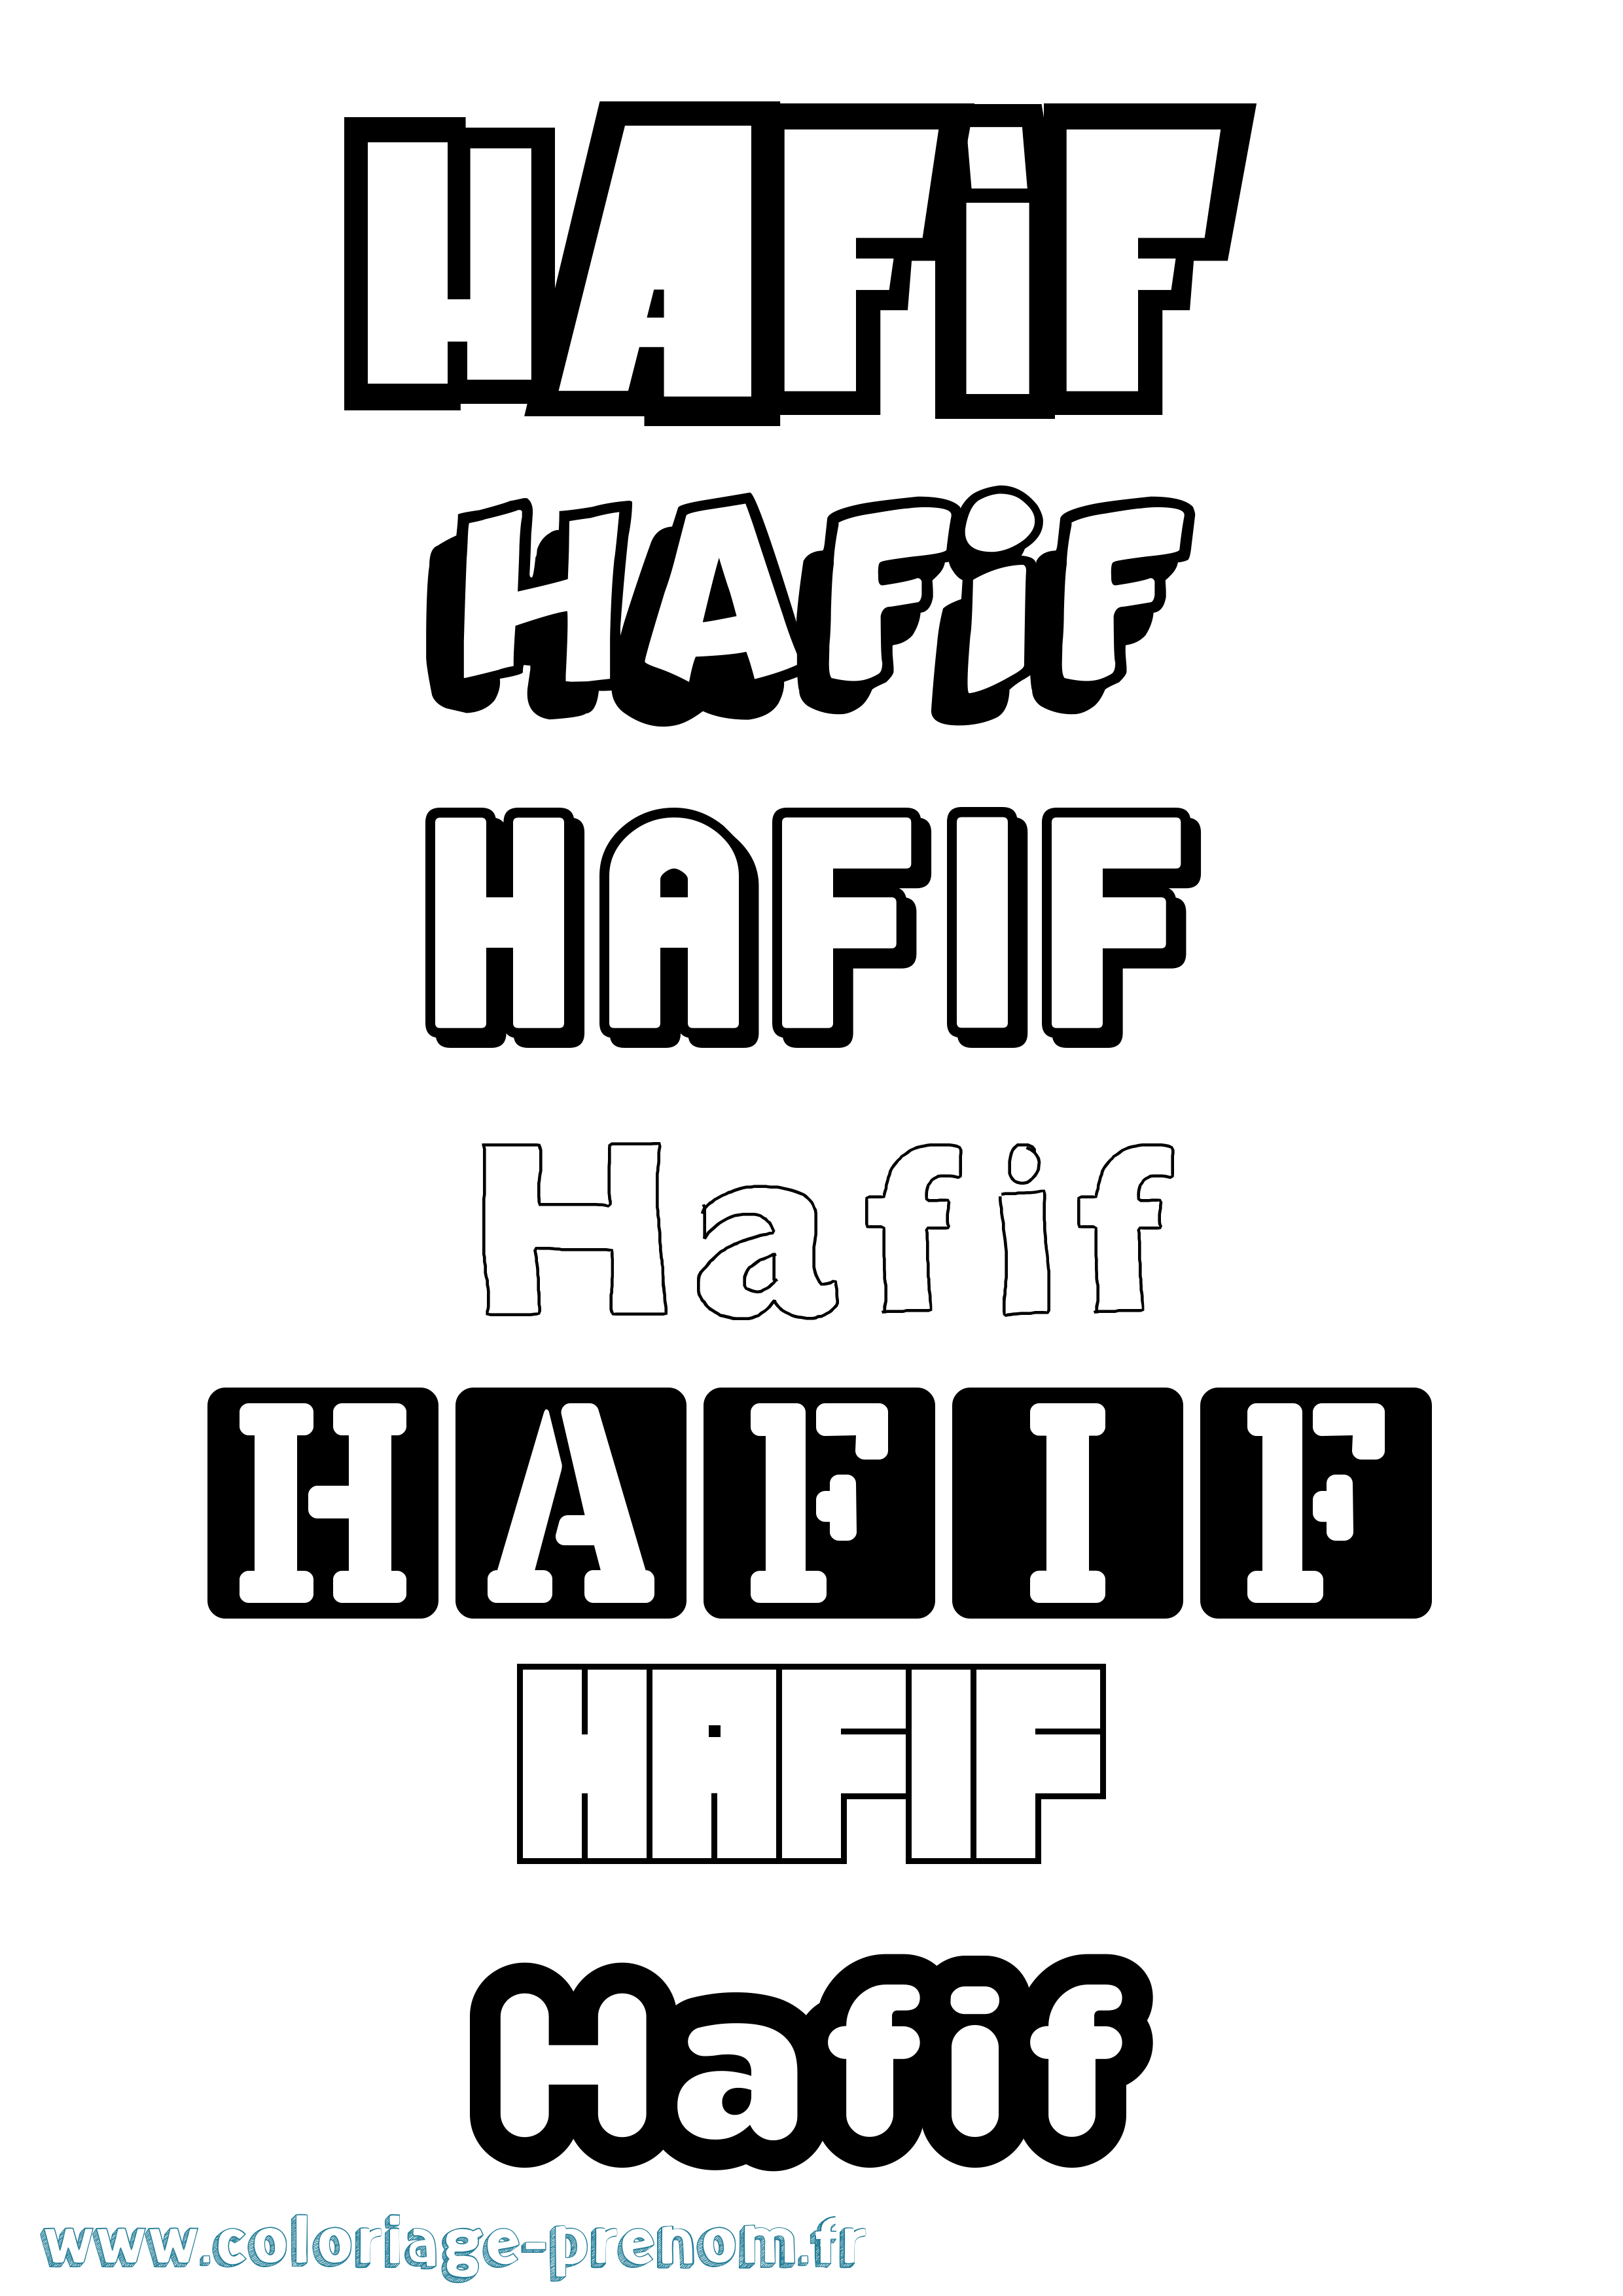 Coloriage prénom Hafif Simple